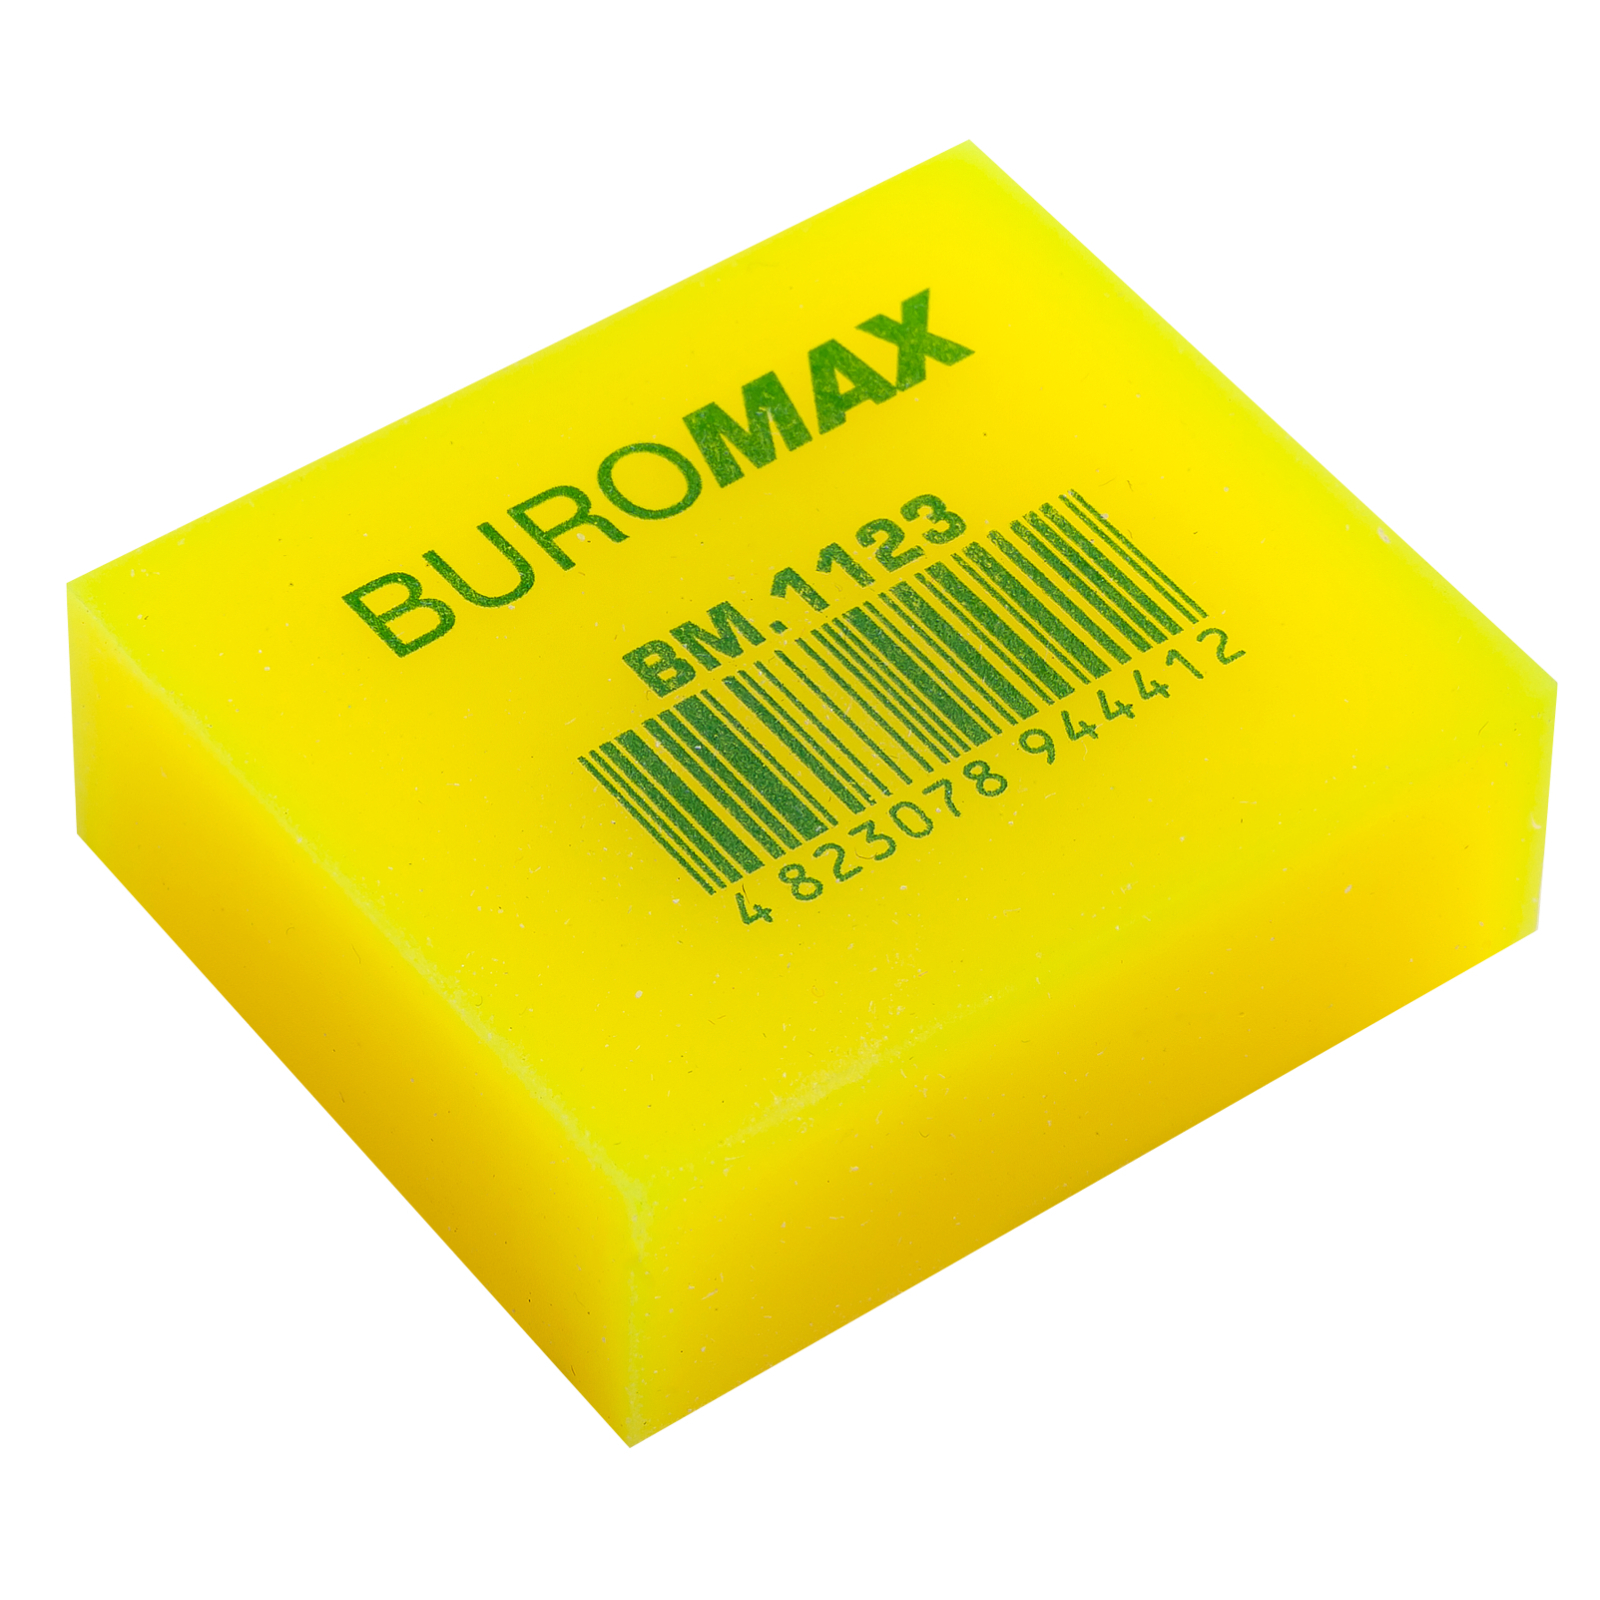 Ластик Buromax NEON, прямоугольная 40x35x14 мм, мягкий пластик, ассорти цветов (BM.1123) изображение 2